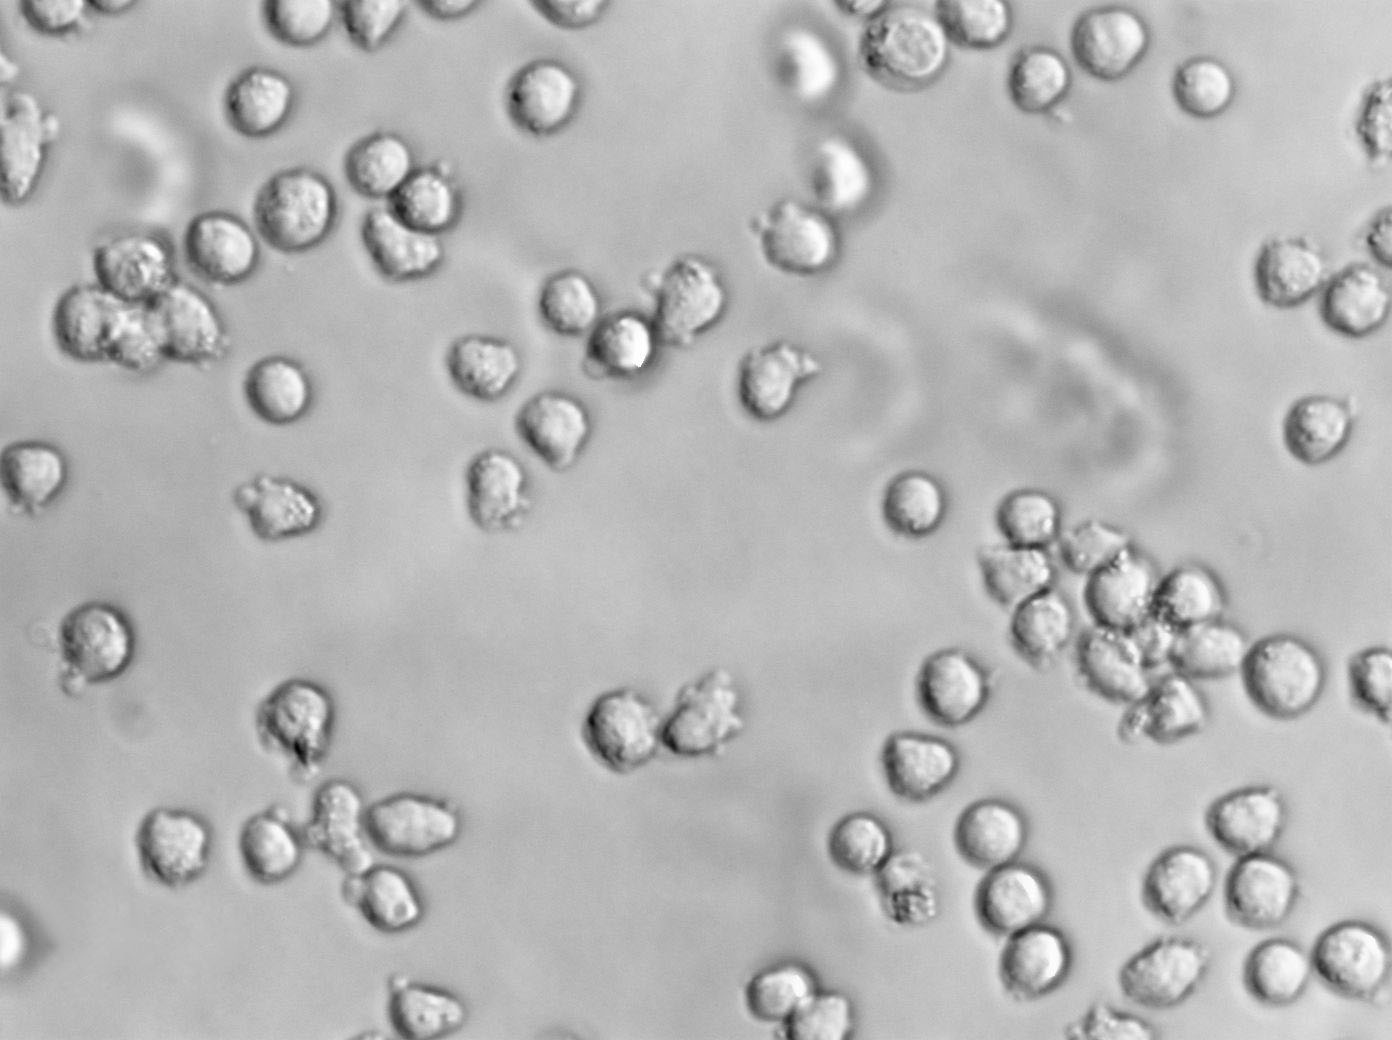 KCL-22人慢性粒细胞白血病复苏细胞(附STR鉴定报告)